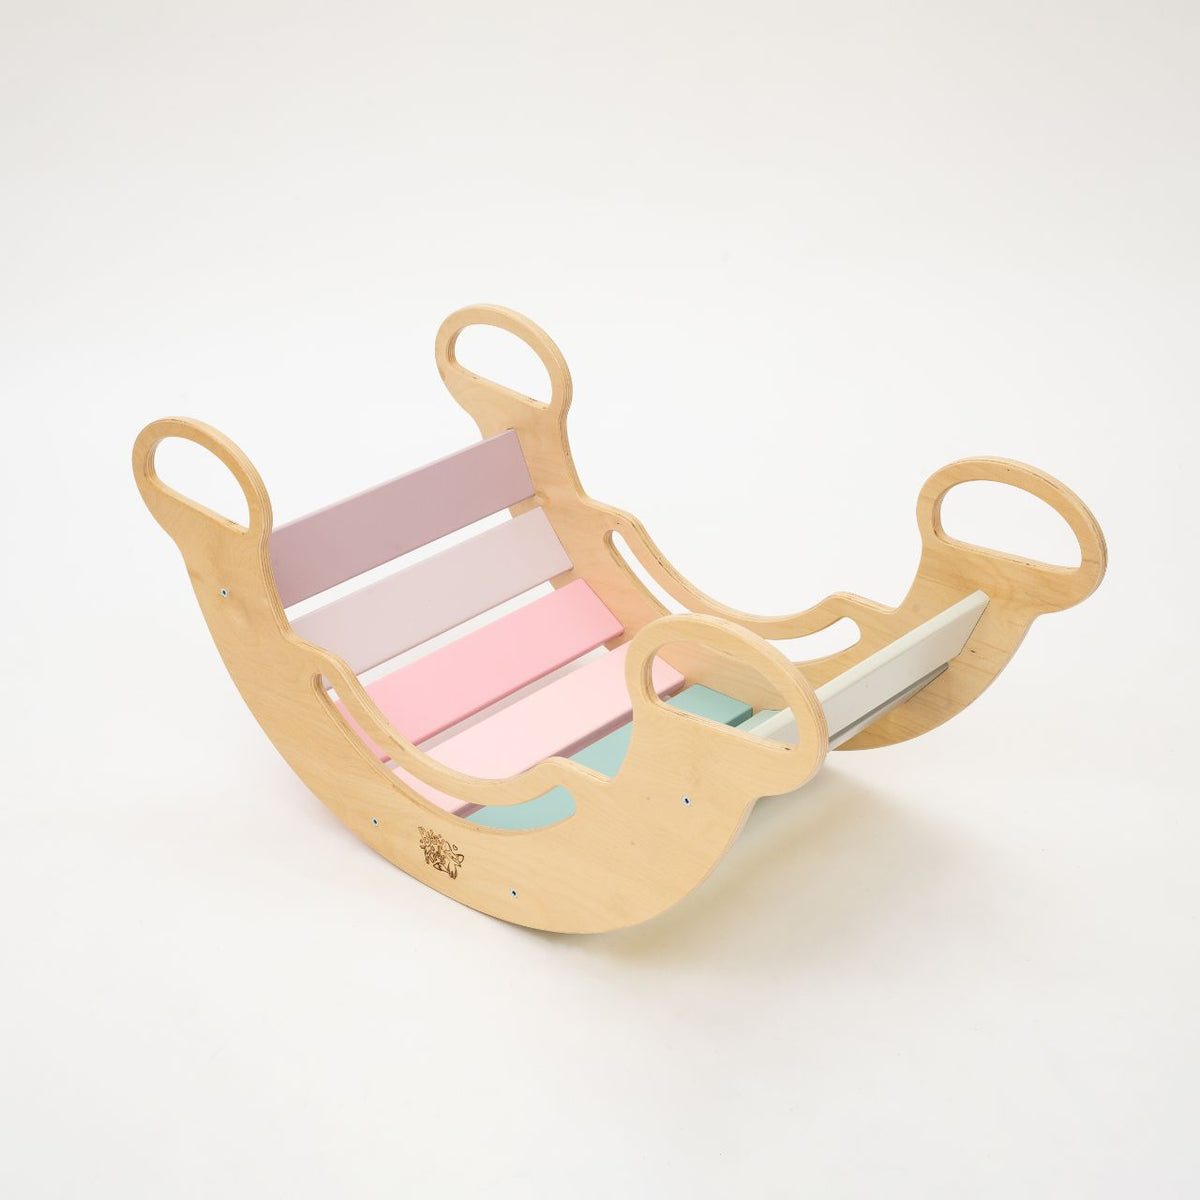 Ensemble - bascule / planche double face / mini chaise - couleurs pastel